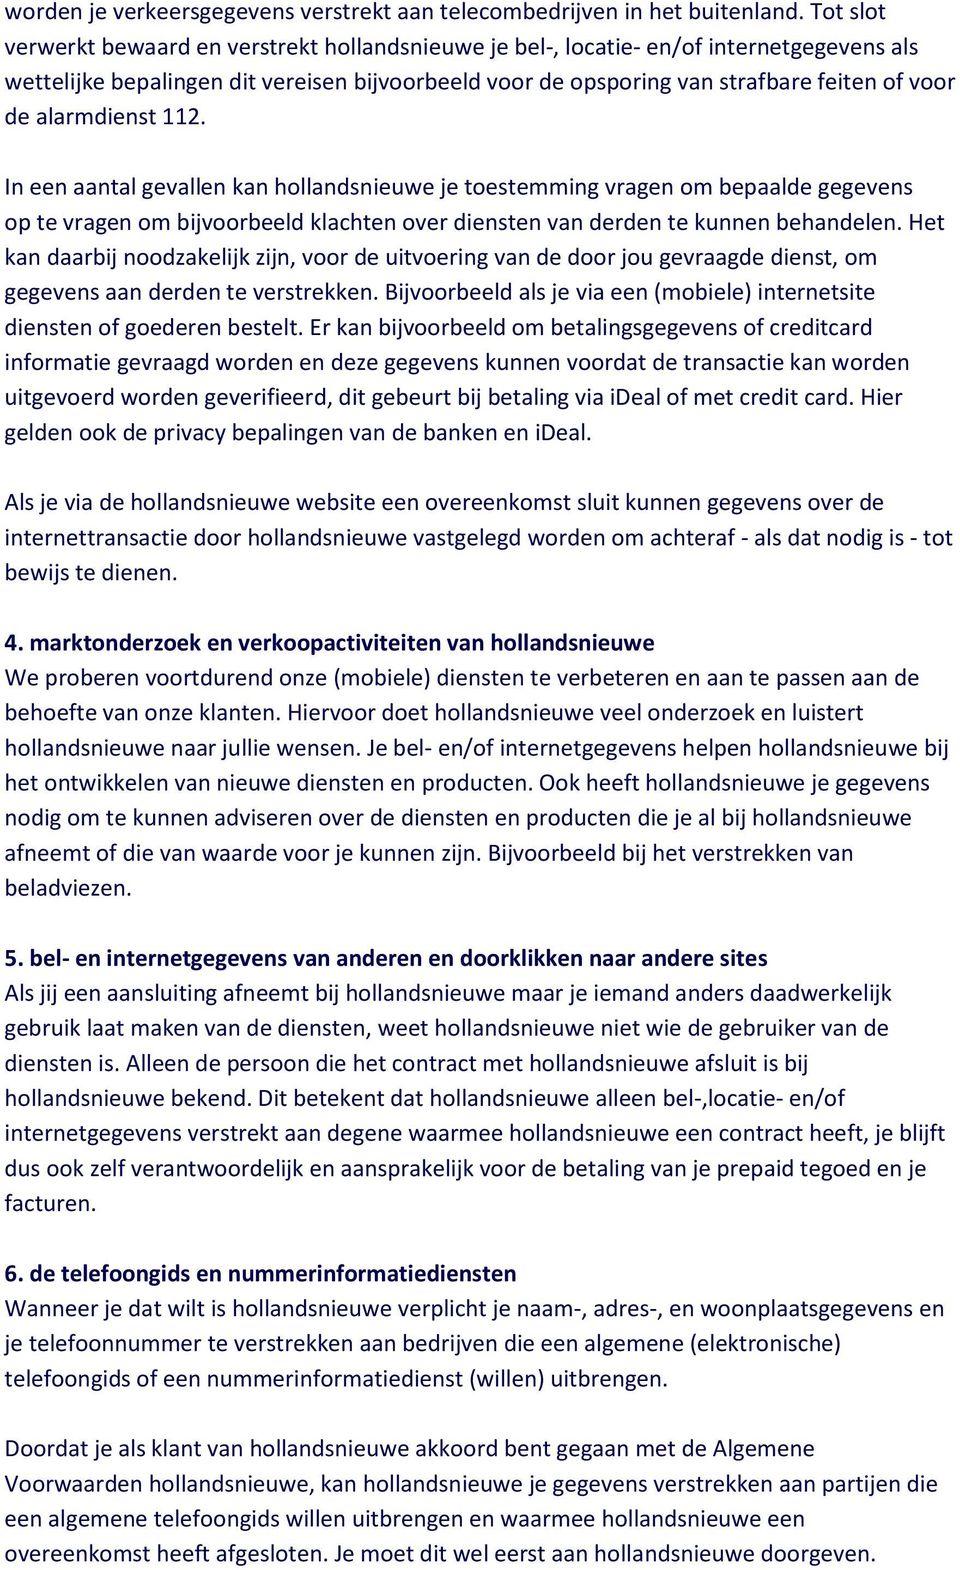 alarmdienst 112. In een aantal gevallen kan hollandsnieuwe je toestemming vragen om bepaalde gegevens op te vragen om bijvoorbeeld klachten over diensten van derden te kunnen behandelen.